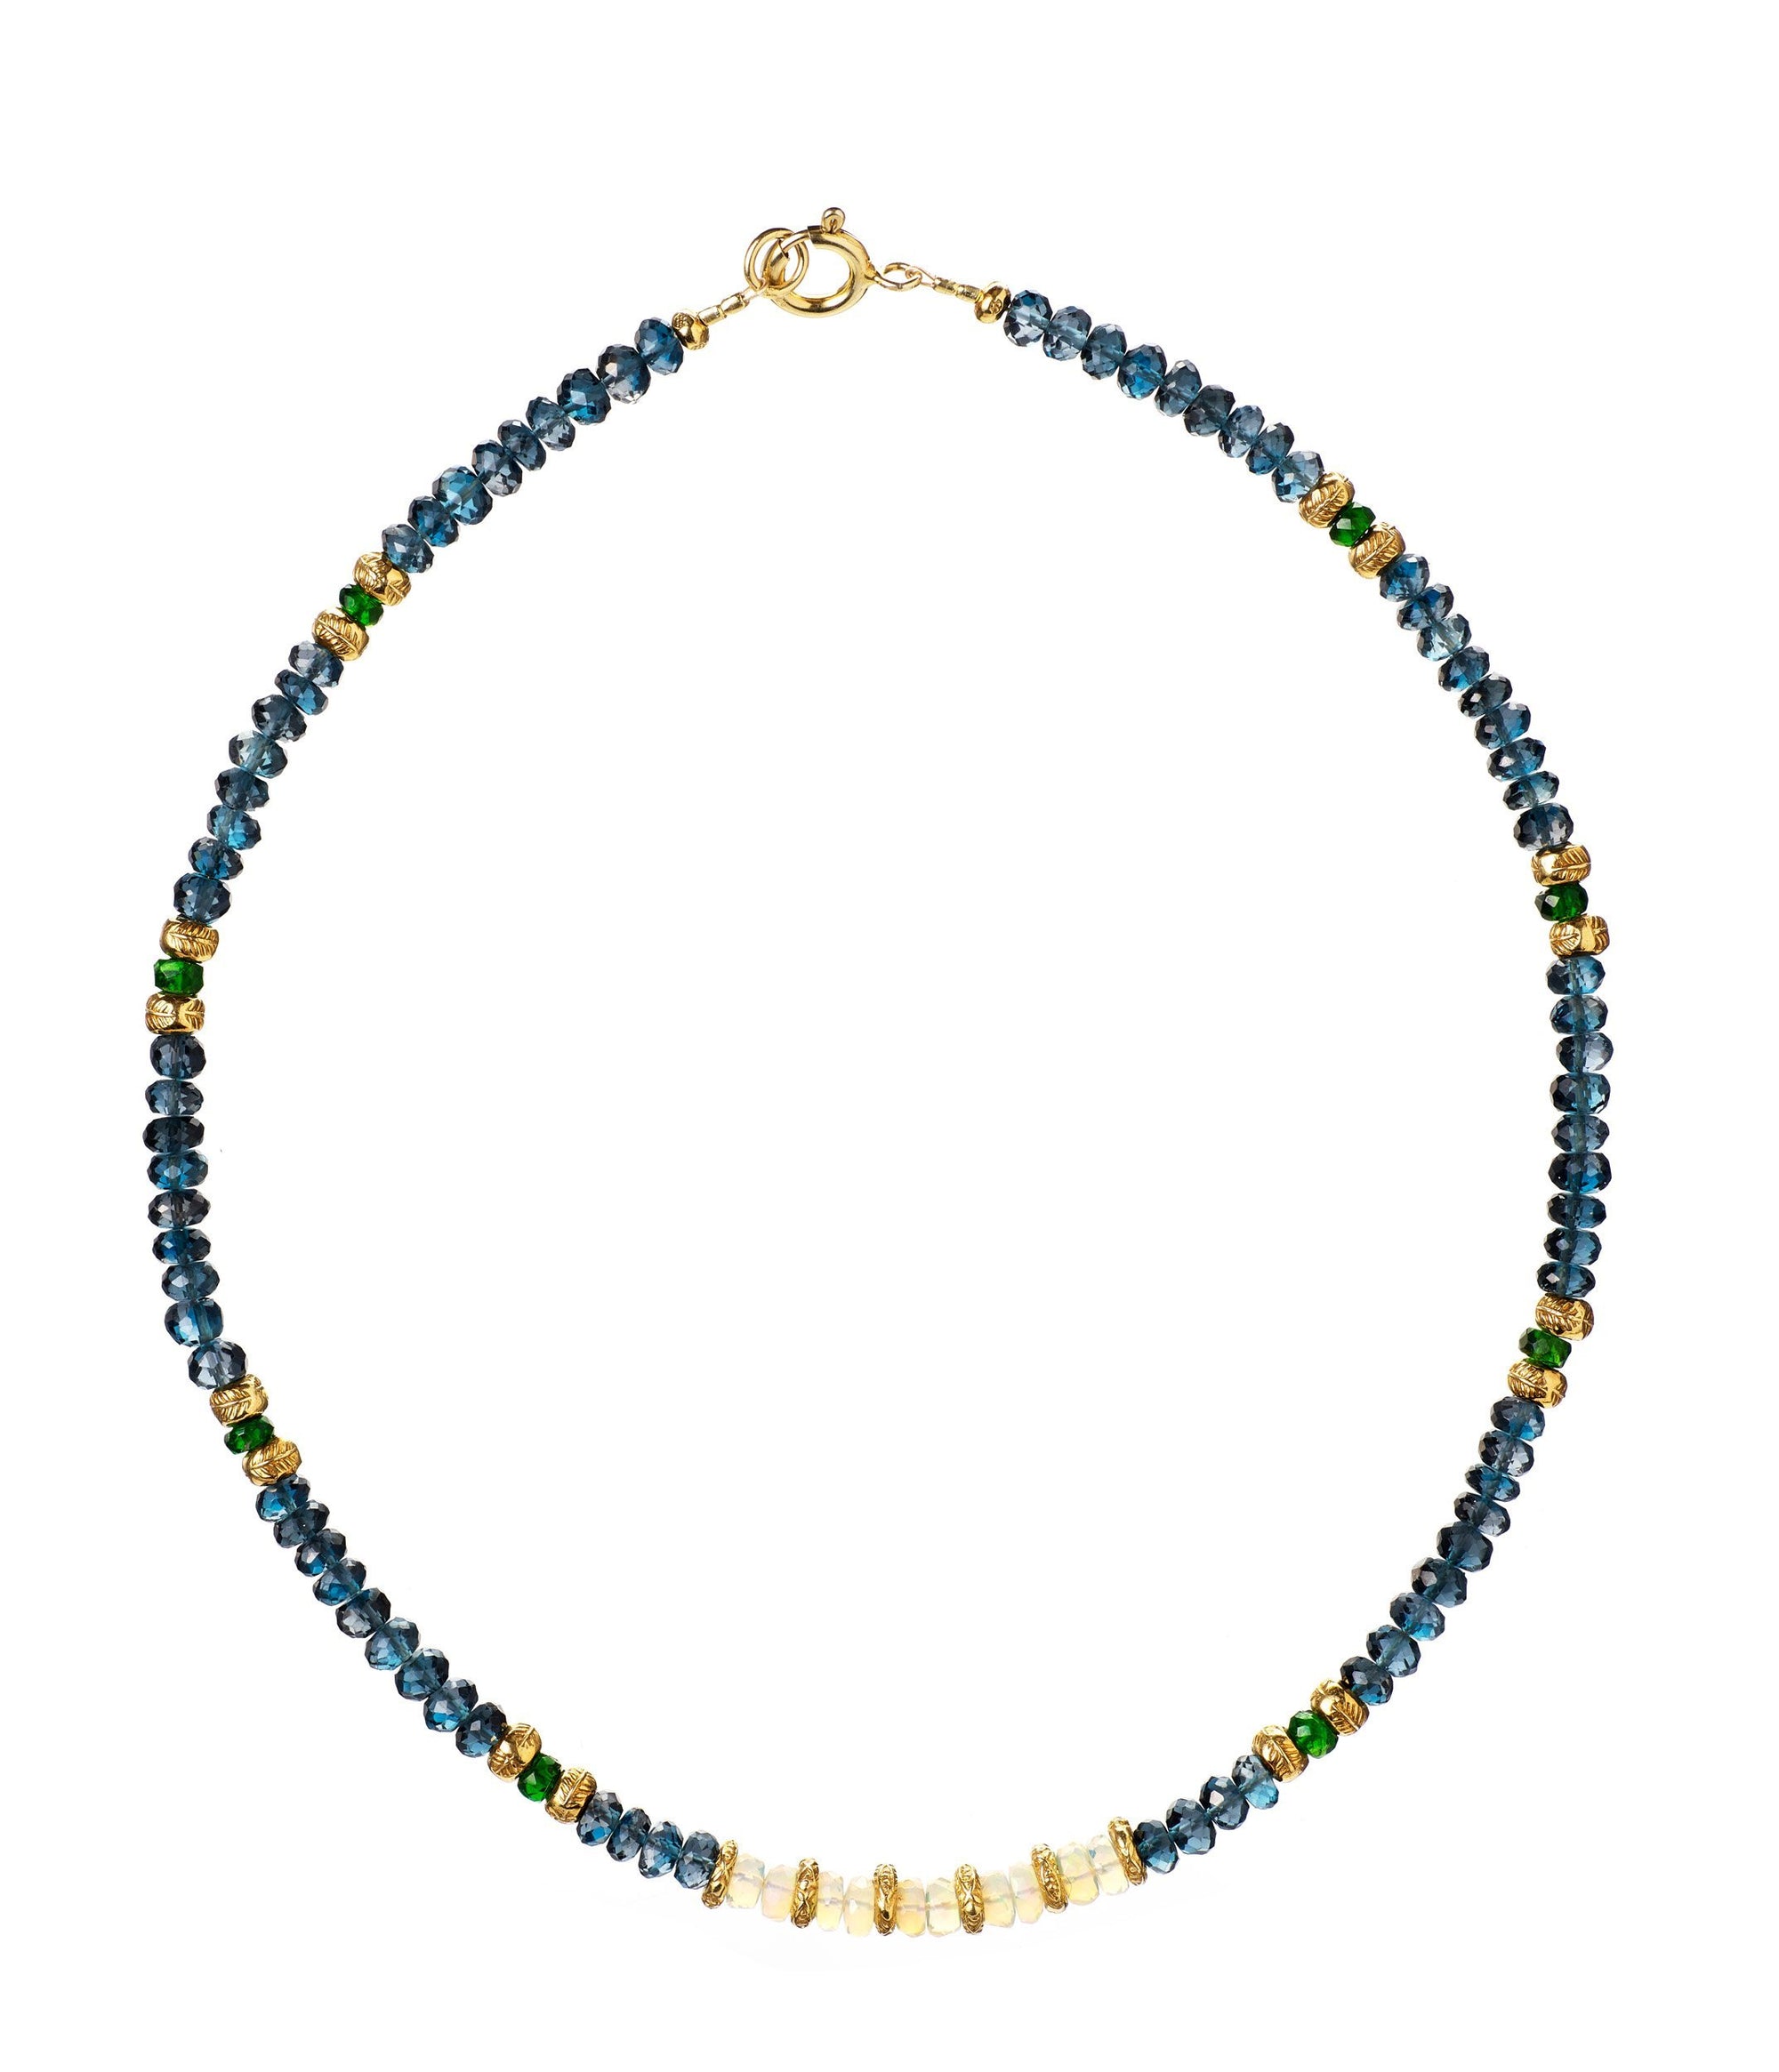 Trimurti necklace